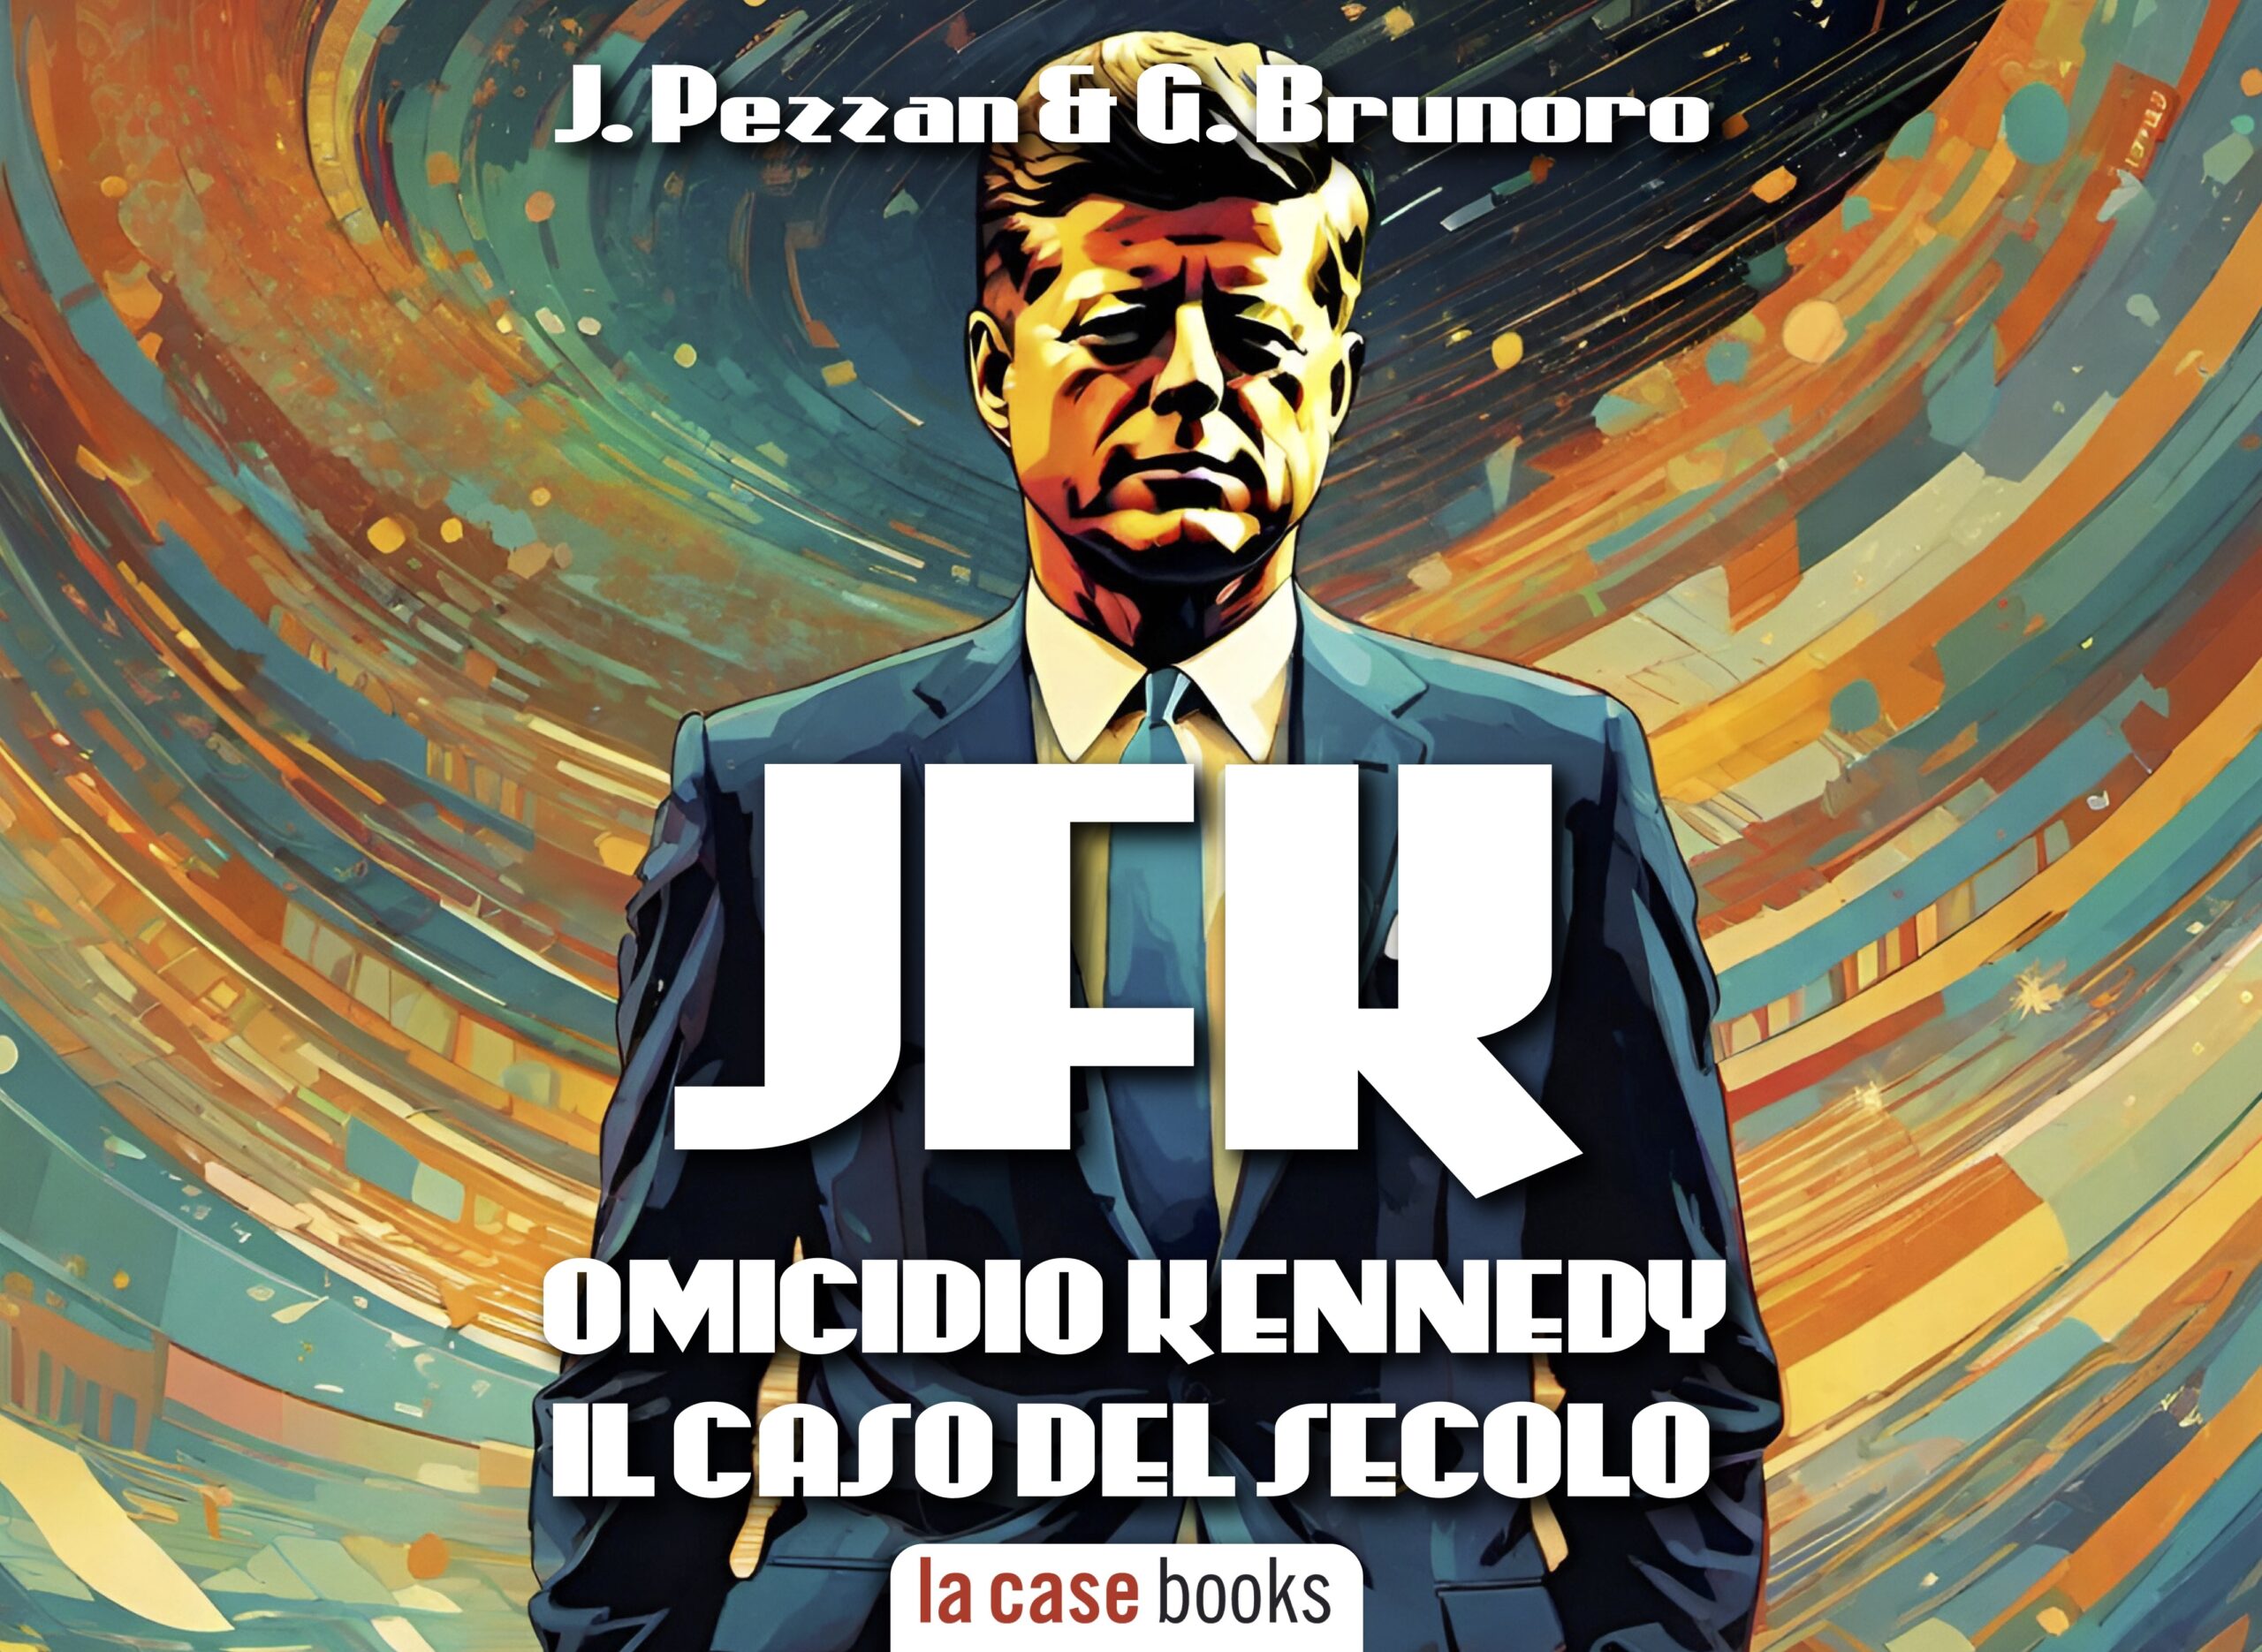 LA CASE Books presenta il nuovo audiolibro di Pezzan e Brunoro dedicato all'omicidio Kennedy. Voce di Nino Carollo. Editing e sound design sono stati realizzati a Van Nuys (Los Angeles)